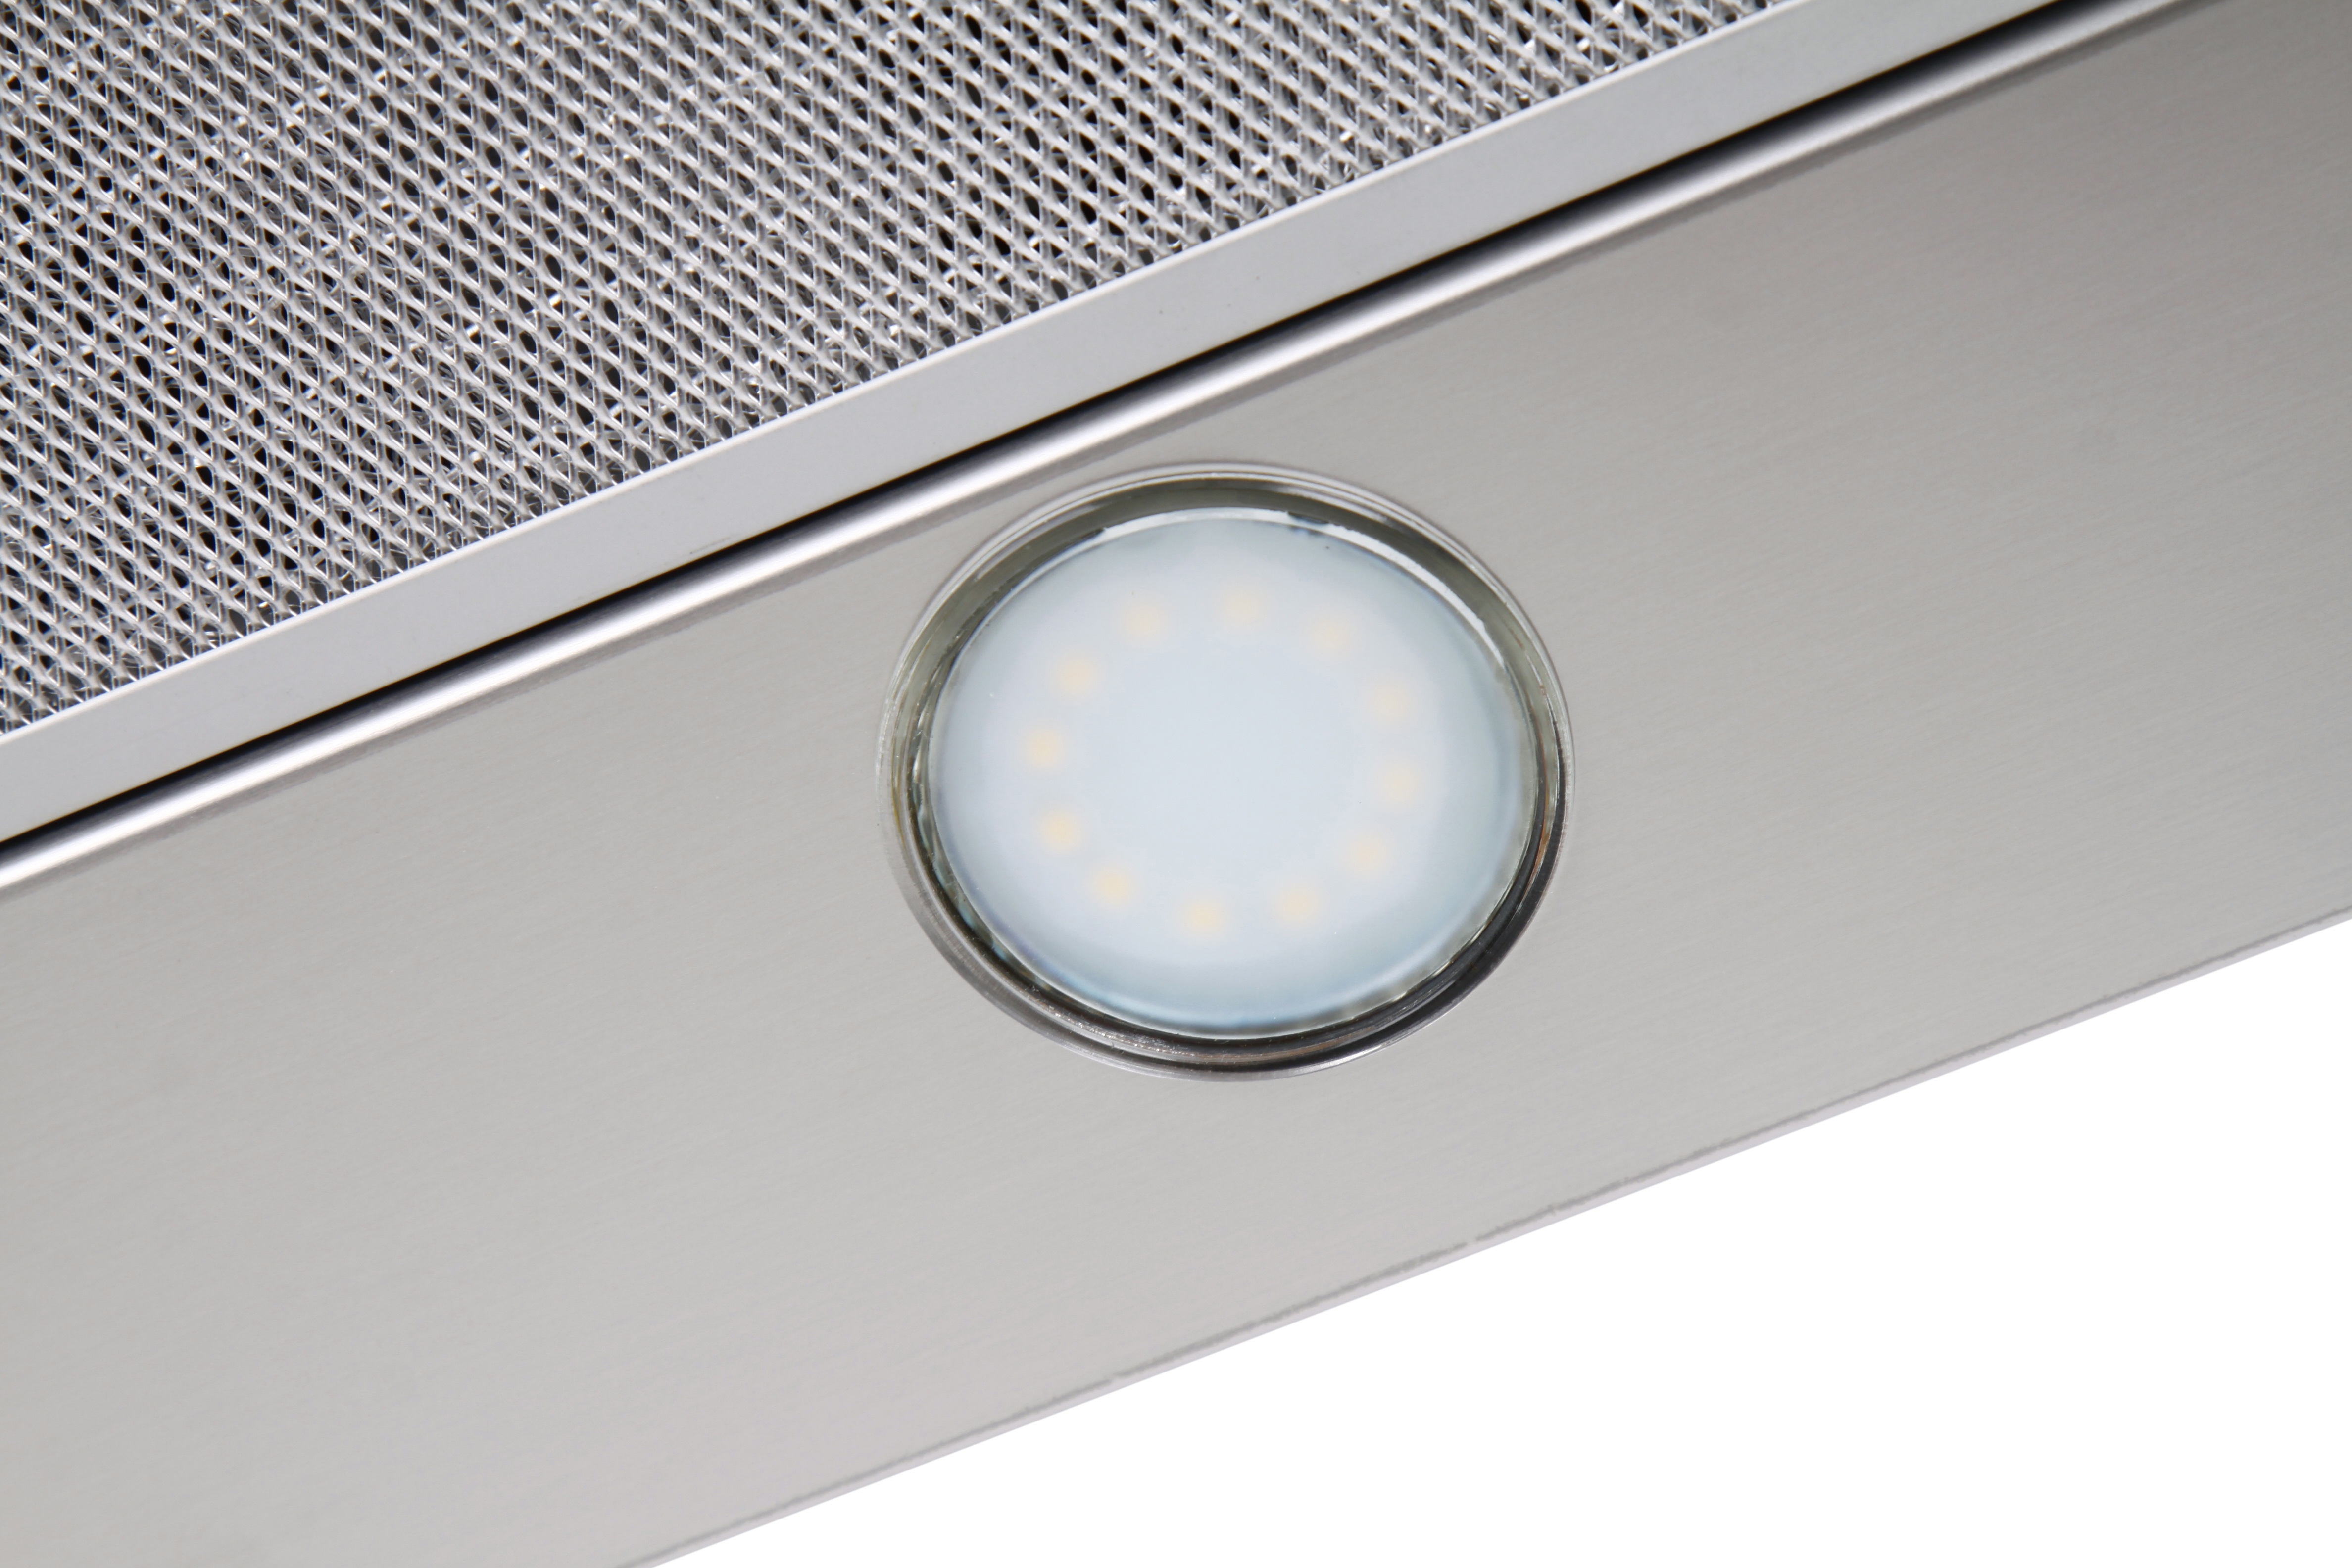 Кухонная вытяжка Ventolux GARDA 60 INOX (800) SMD LED отзывы - изображения 5